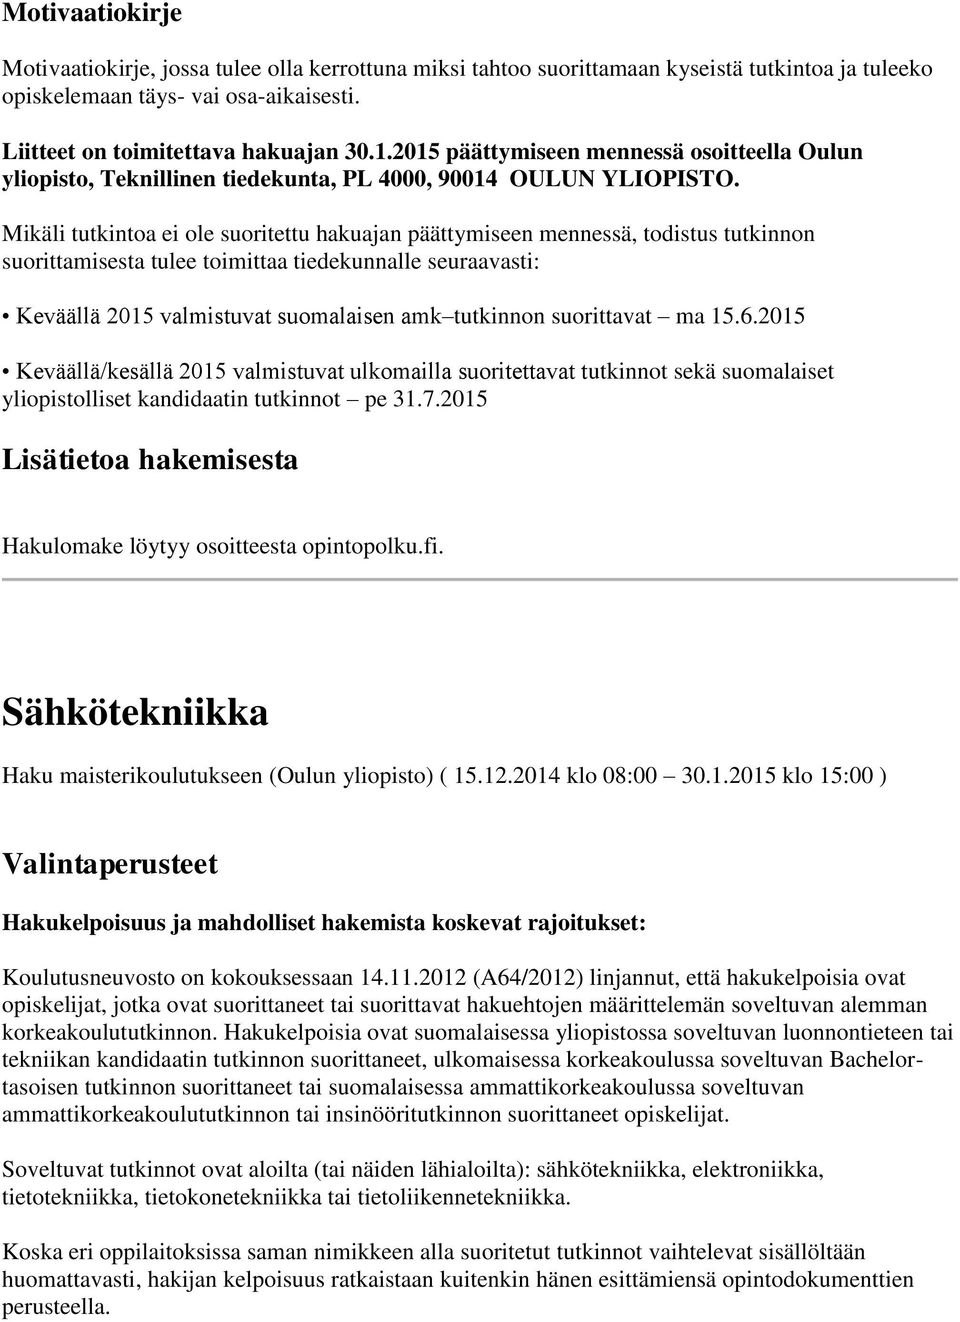 Mikäli tutkintoa ei ole suoritettu hakuajan päättymiseen mennessä, todistus tutkinnon suorittamisesta tulee toimittaa tiedekunnalle seuraavasti: Keväällä 2015 valmistuvat suomalaisen amk tutkinnon